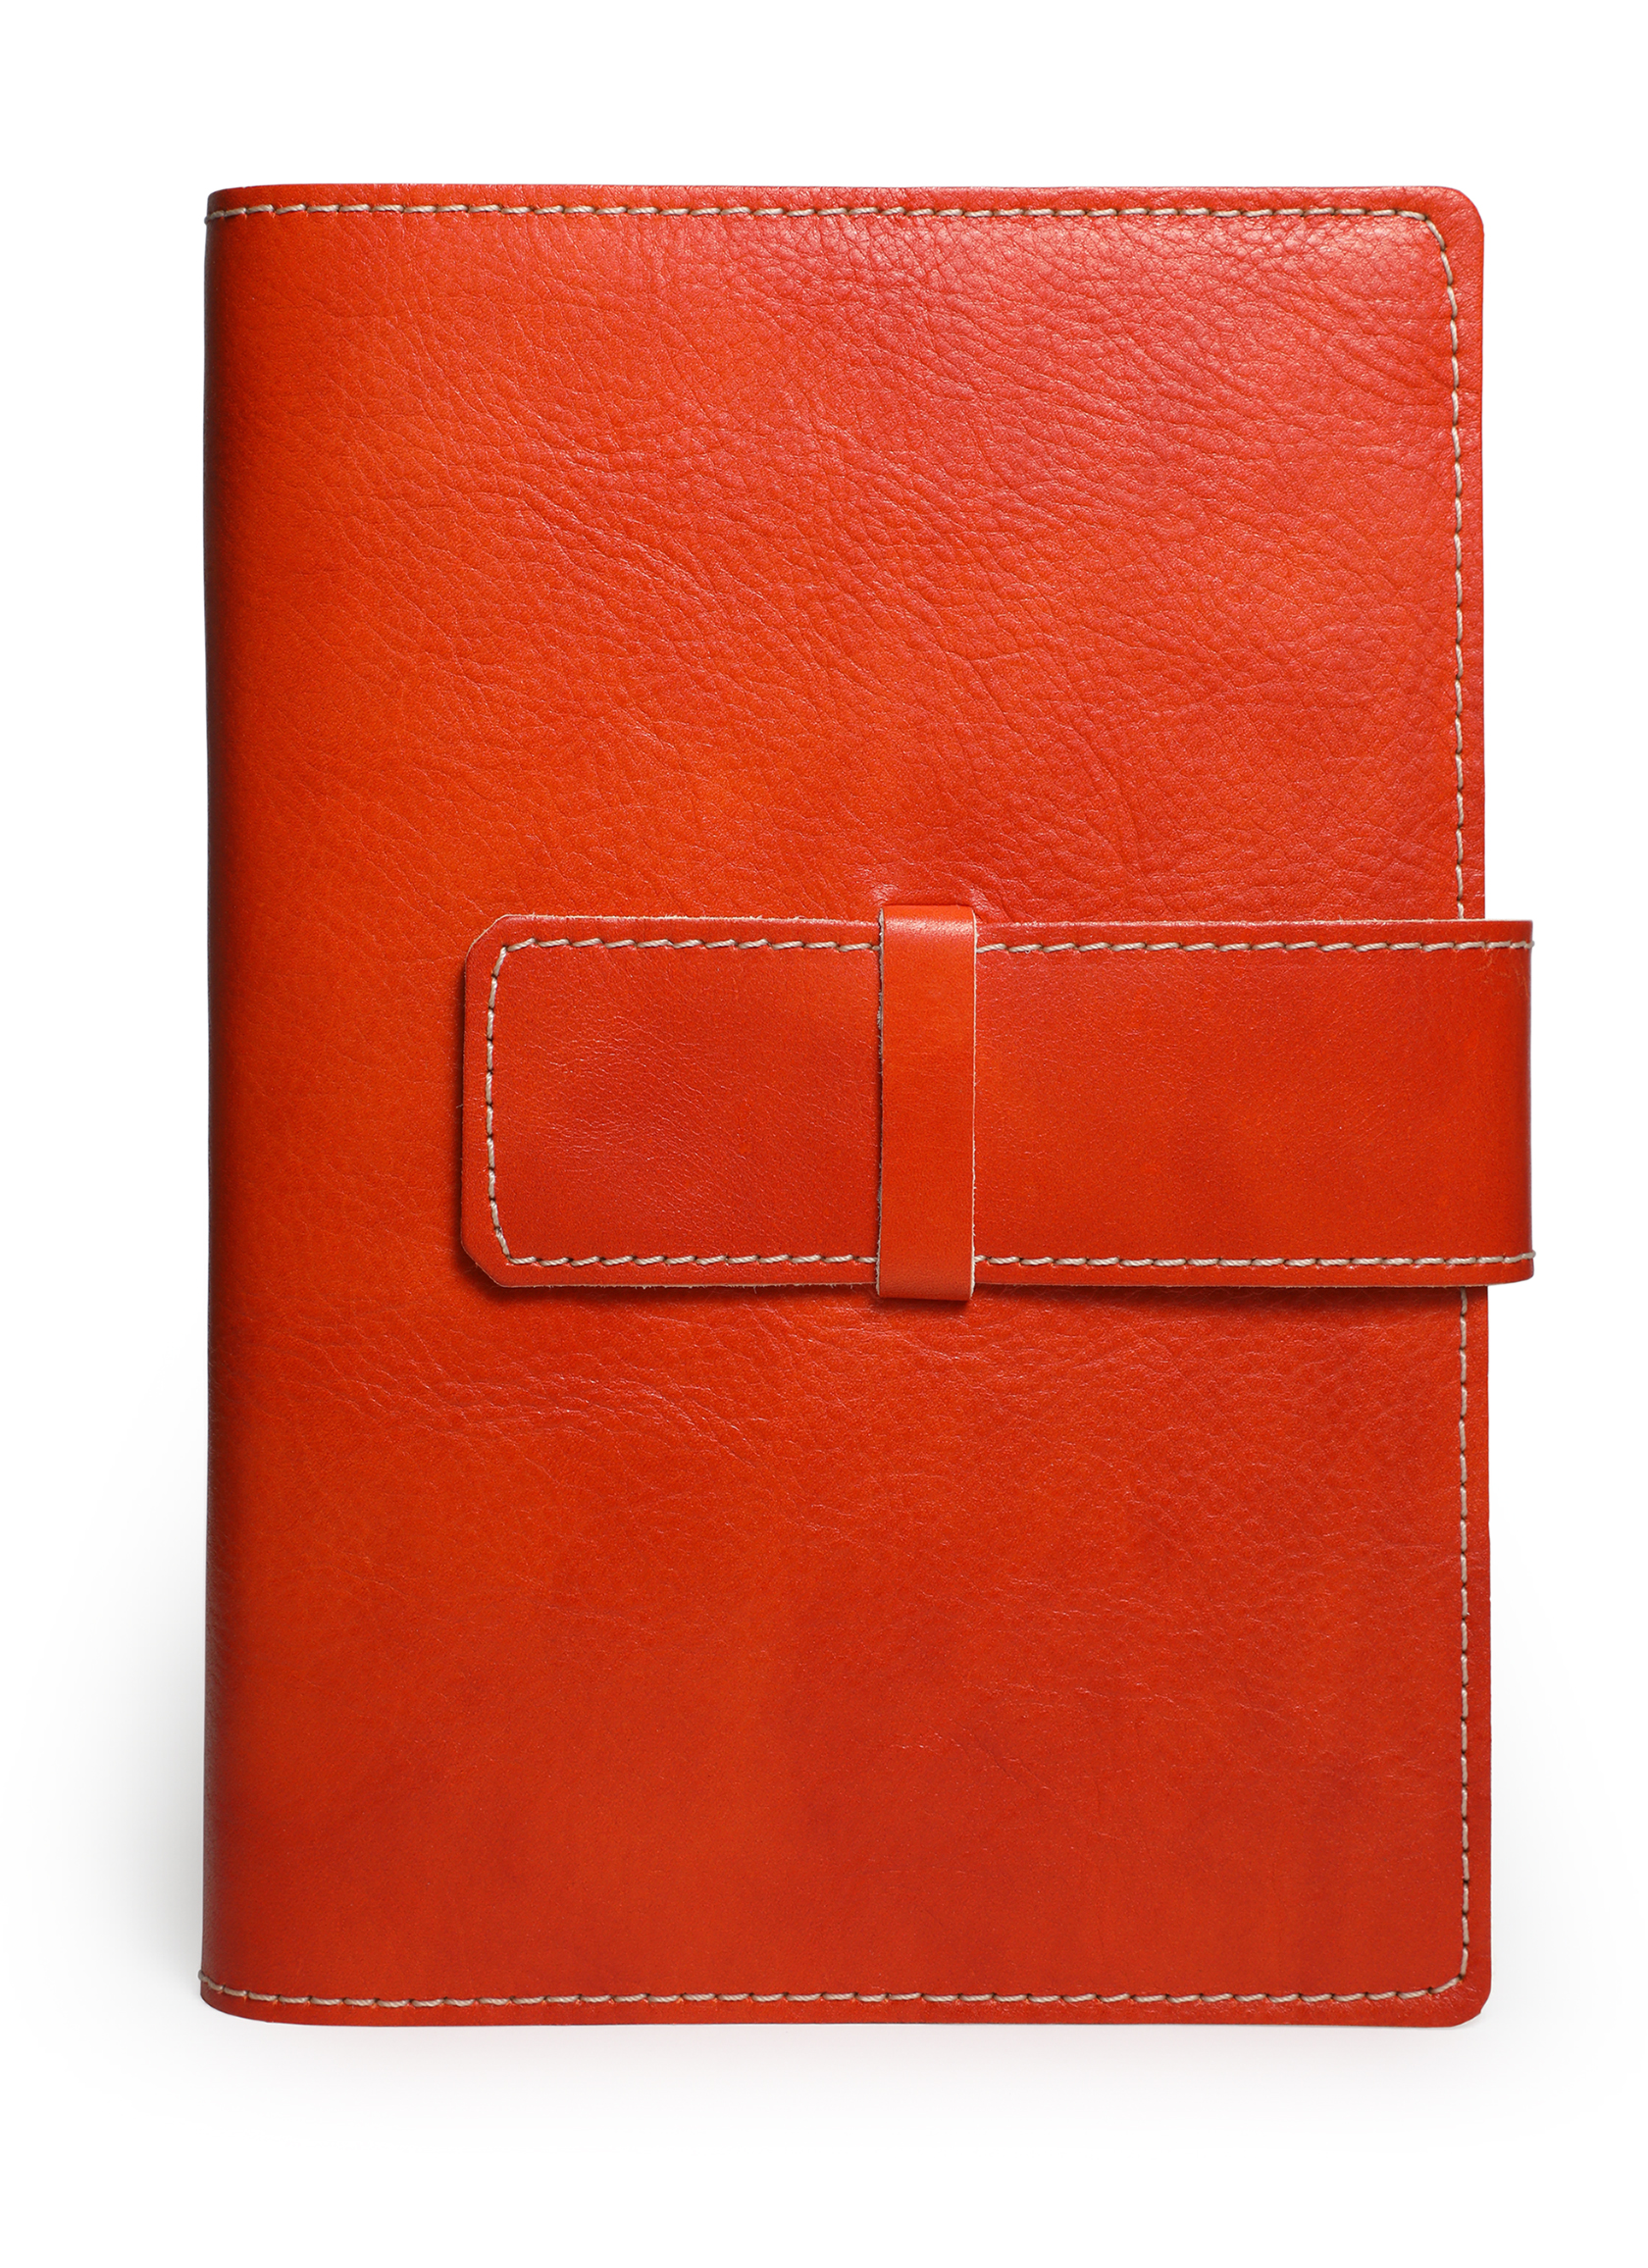 N1387-O - Geniuen Leather Journal Flap Refill 6x8 Lined, Orange